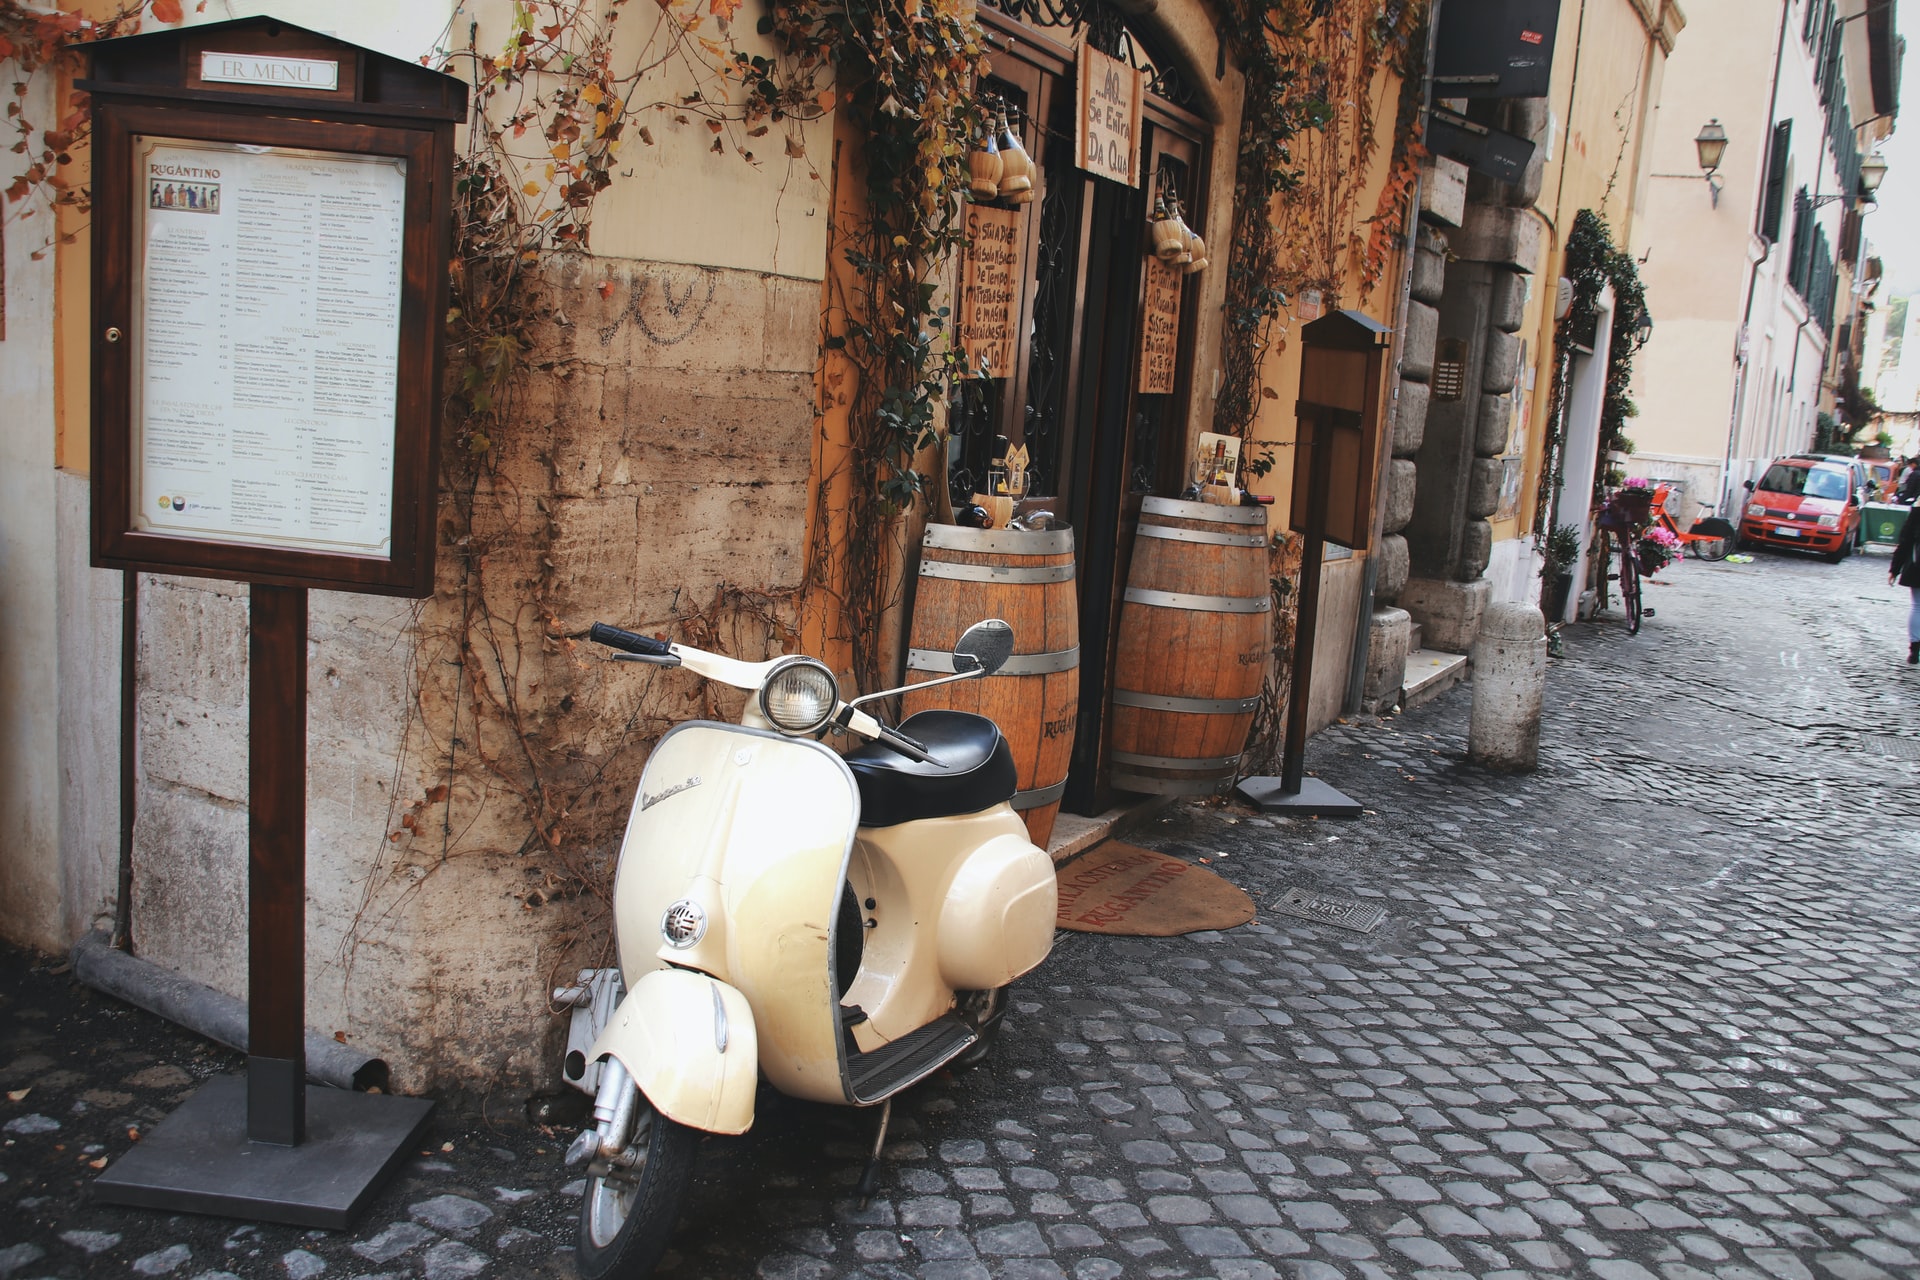 Situata sulla riva occidentale del Tevere, Trastevere è una zona giovane e vivace con un'atmosfera alternativa e molti ristoranti.